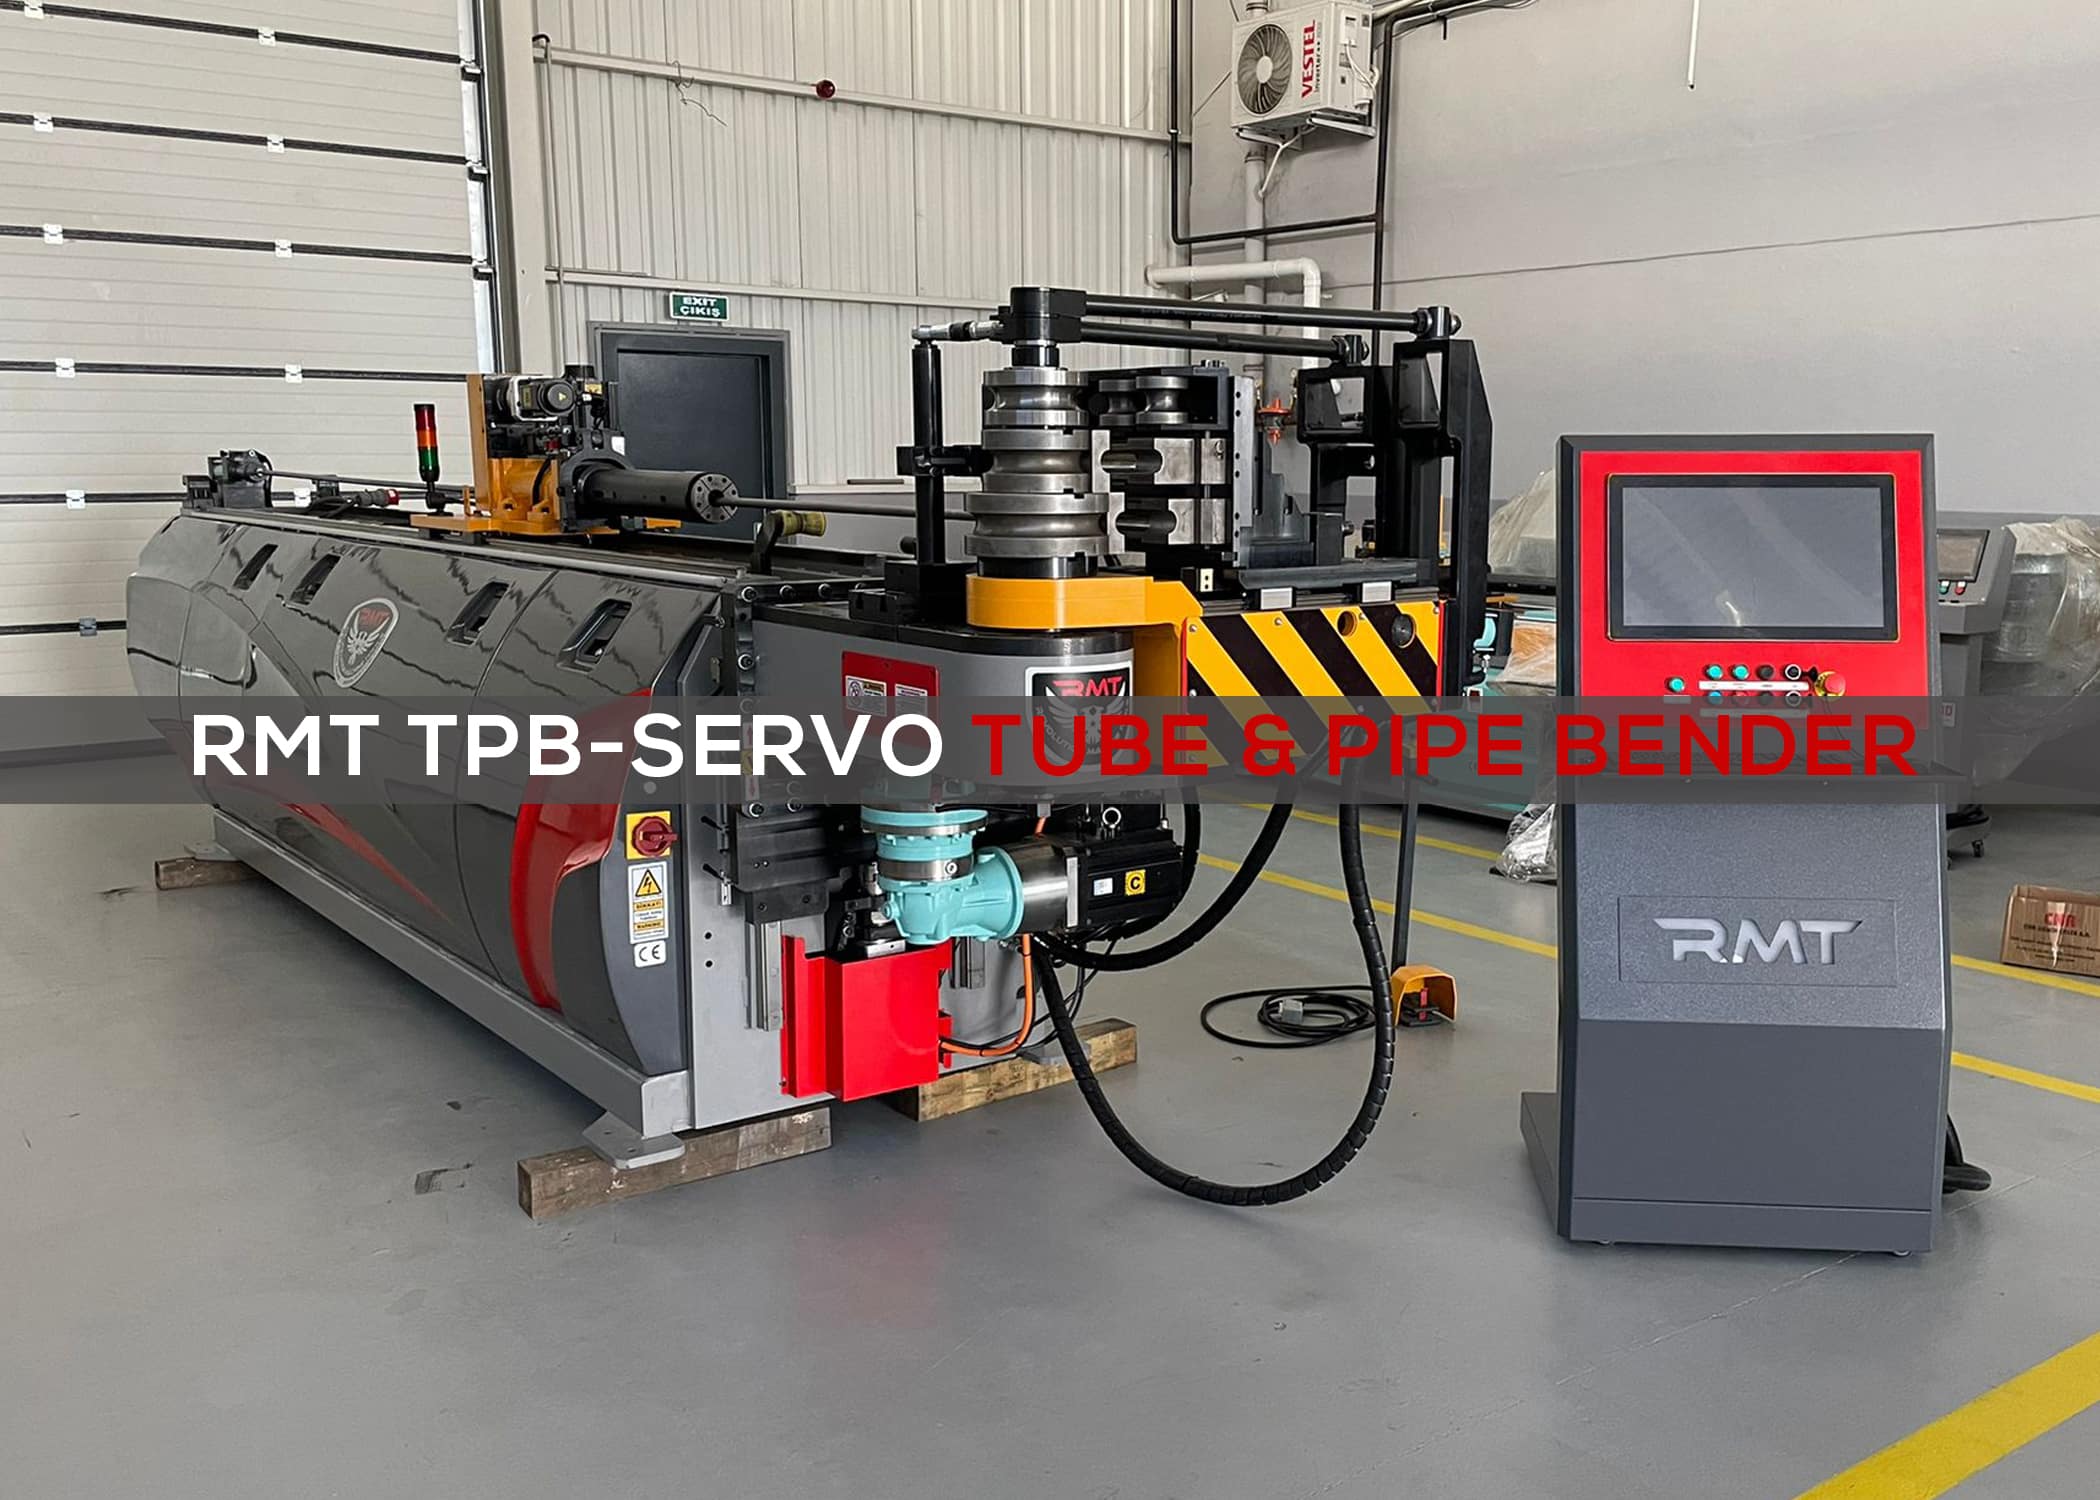 RMT TPB-SERVO Featured